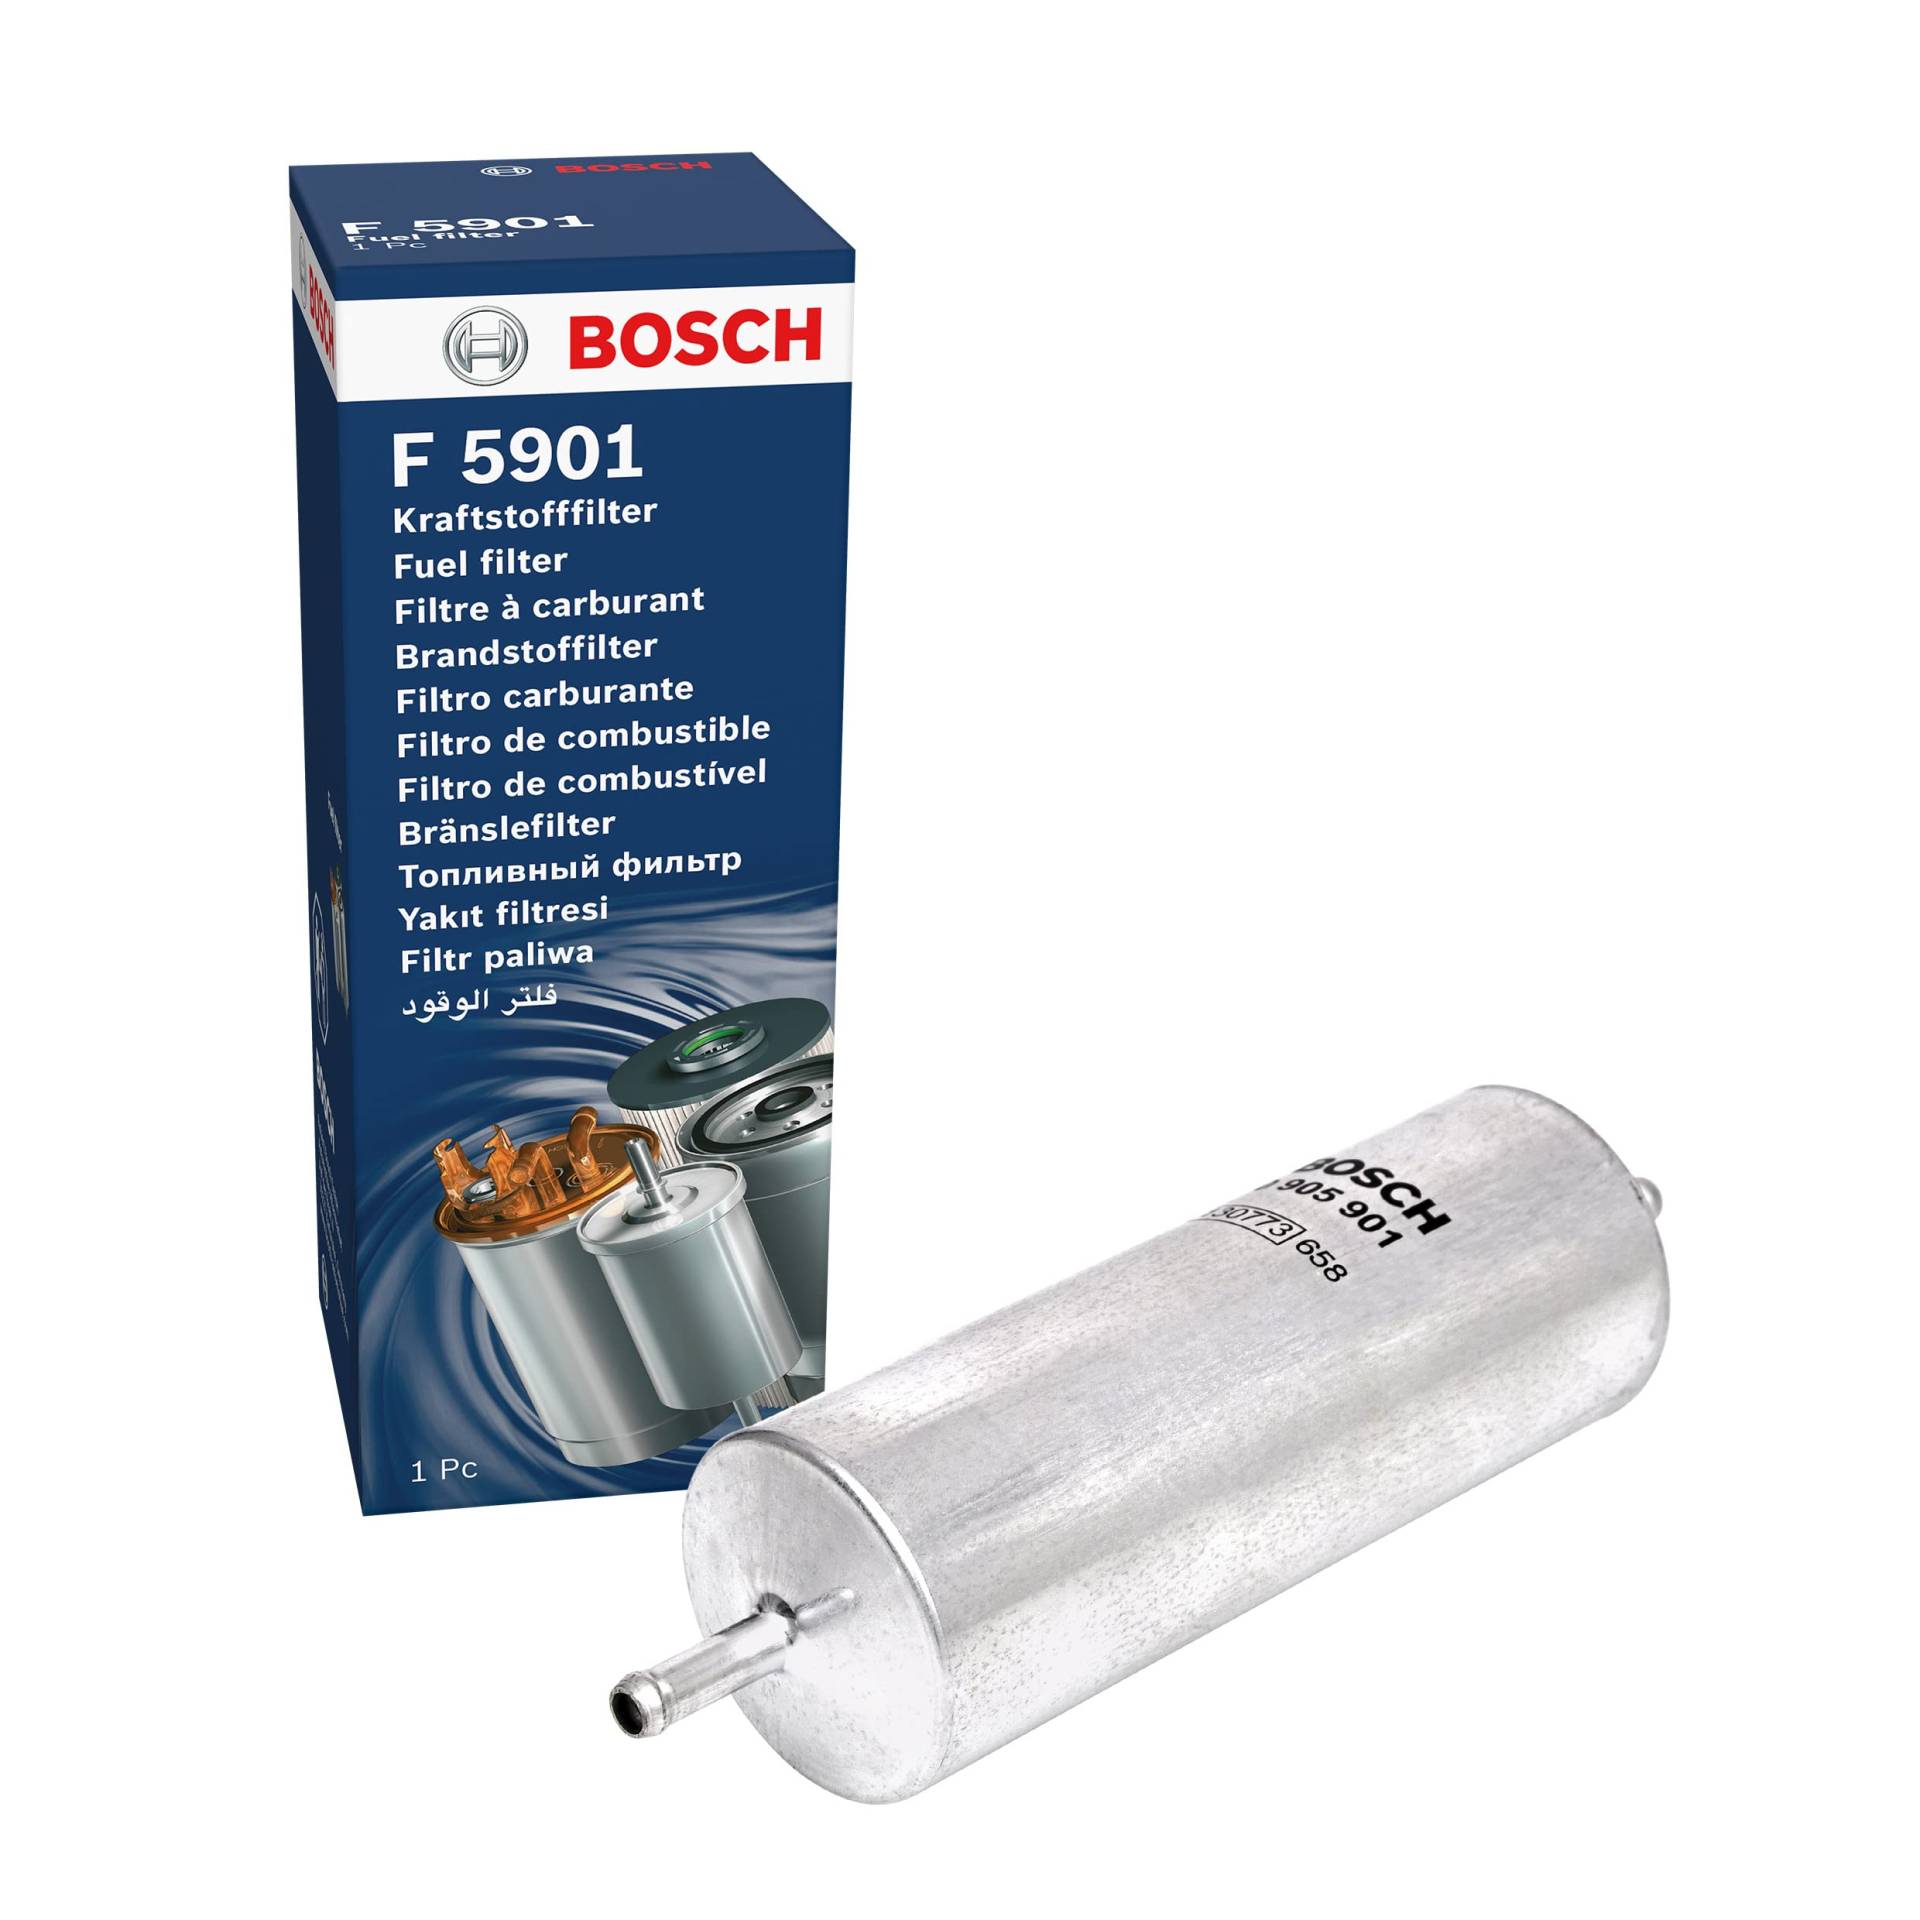 Bosch F5901 - Benzinfilter Auto von Bosch Automotive